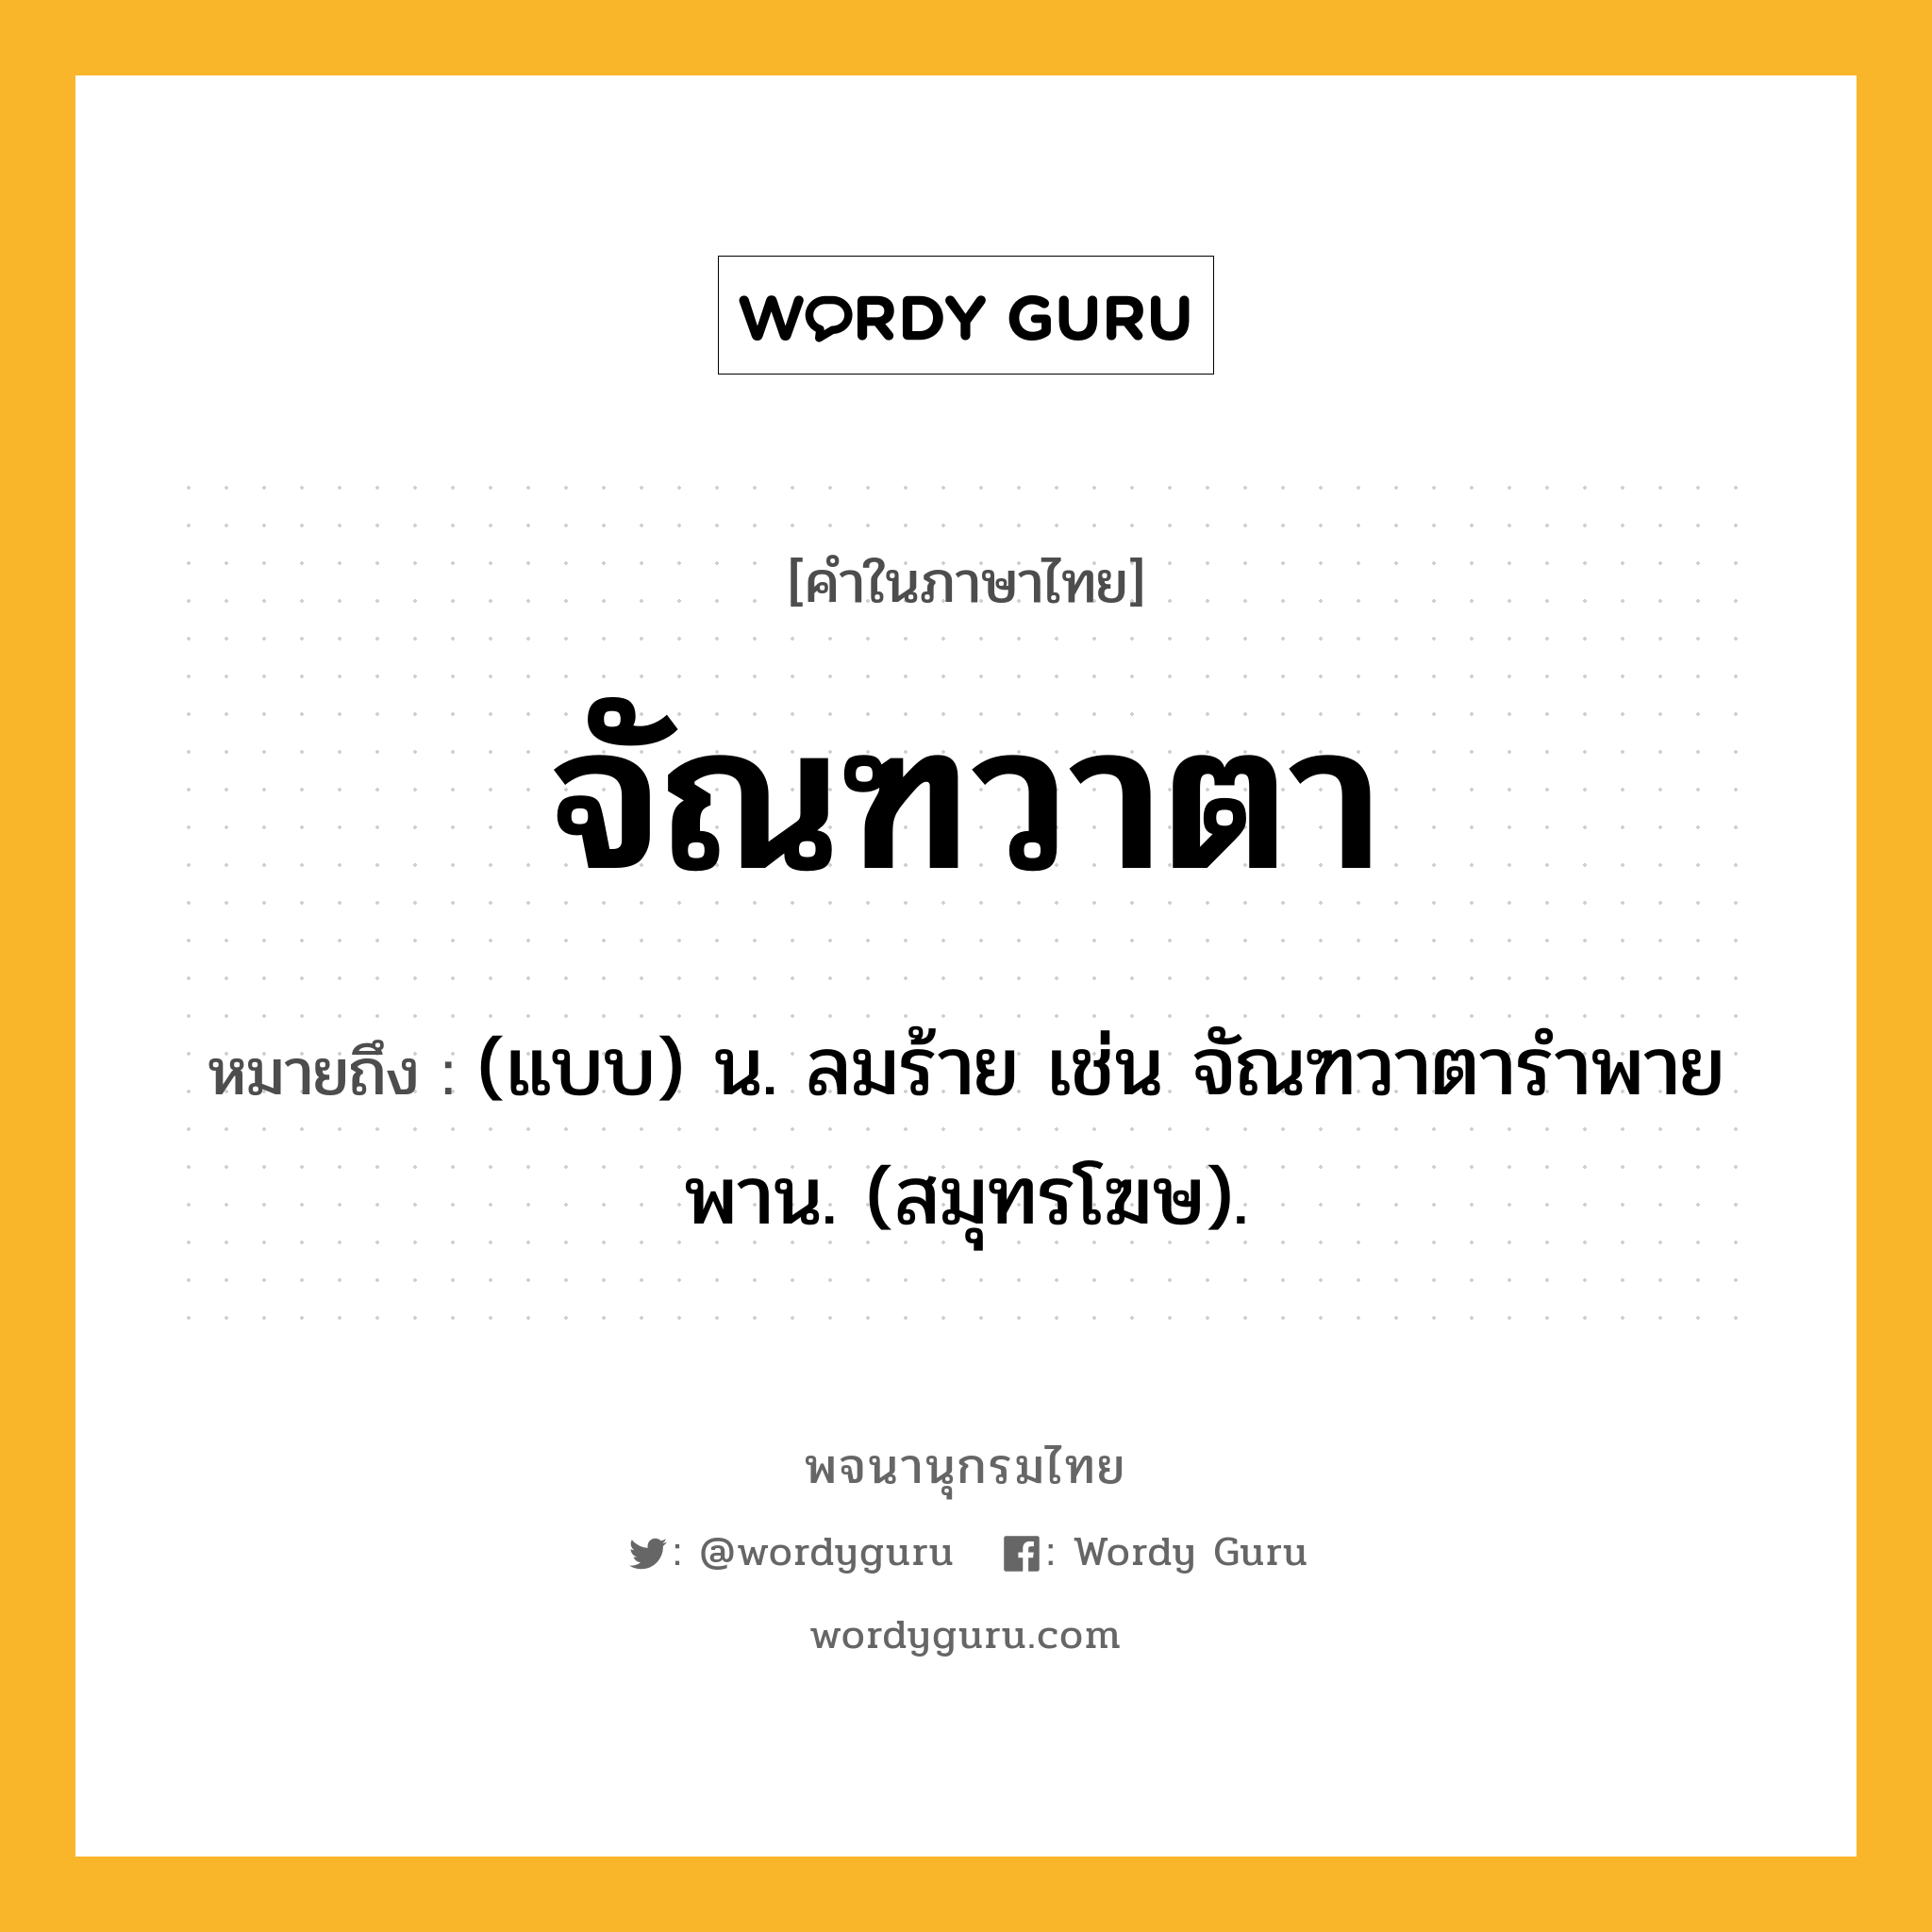 จัณฑวาตา หมายถึงอะไร?, คำในภาษาไทย จัณฑวาตา หมายถึง (แบบ) น. ลมร้าย เช่น จัณฑวาตารําพายพาน. (สมุทรโฆษ).